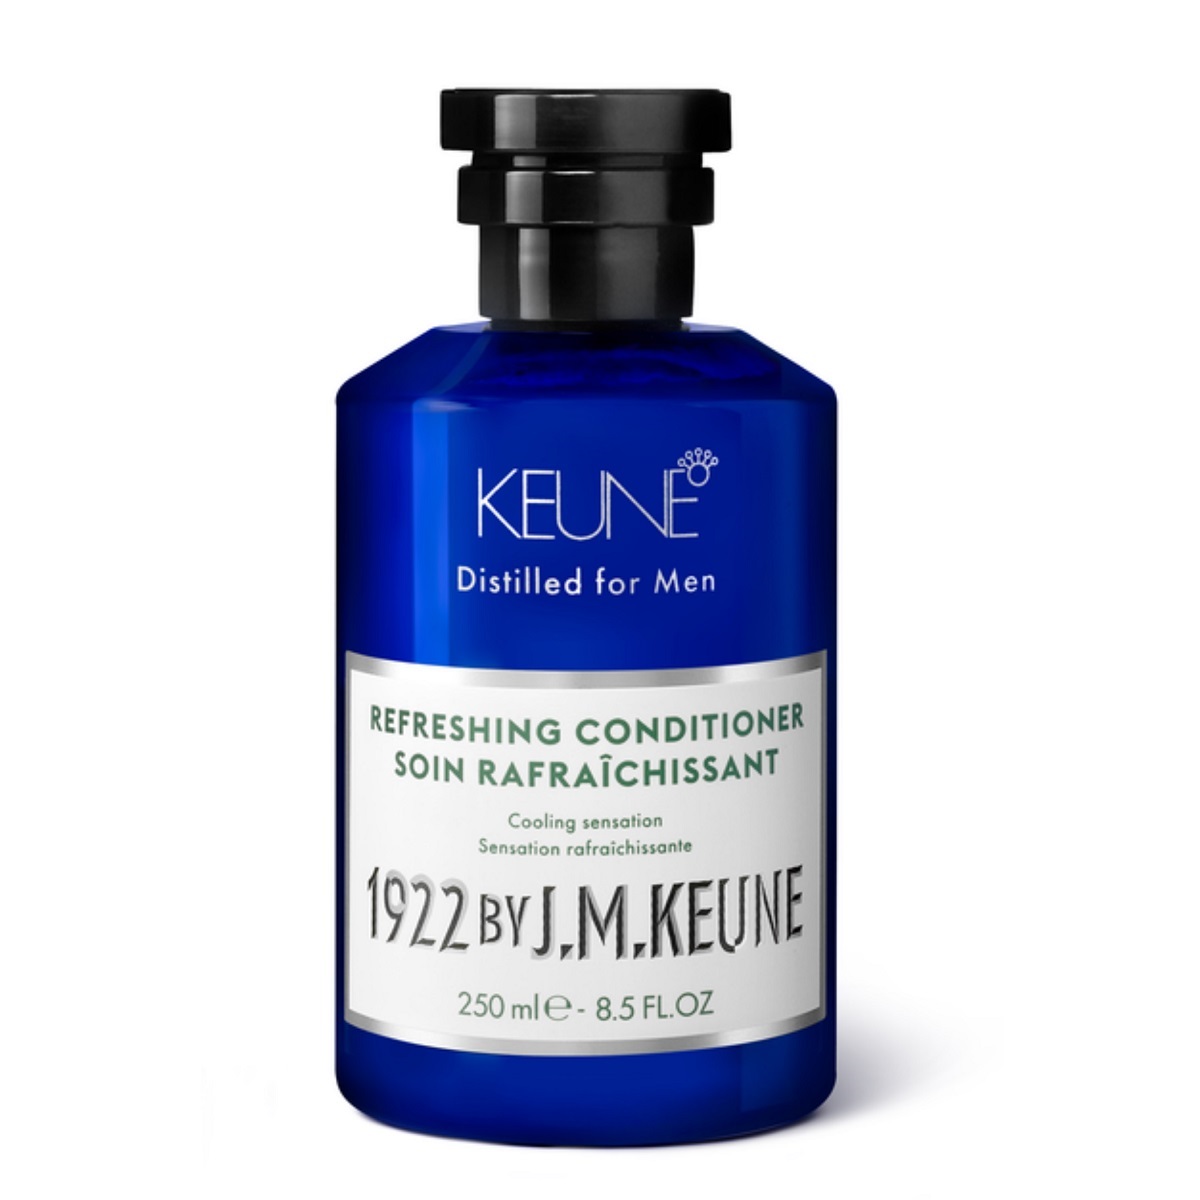 Keune Освежающий кондиционер Refreshing Conditioner, 250 мл (Keune, 1922 by J.M. Keune) tummydrops набор с перечной мятой лайм арбуз и ваниль 21 шт